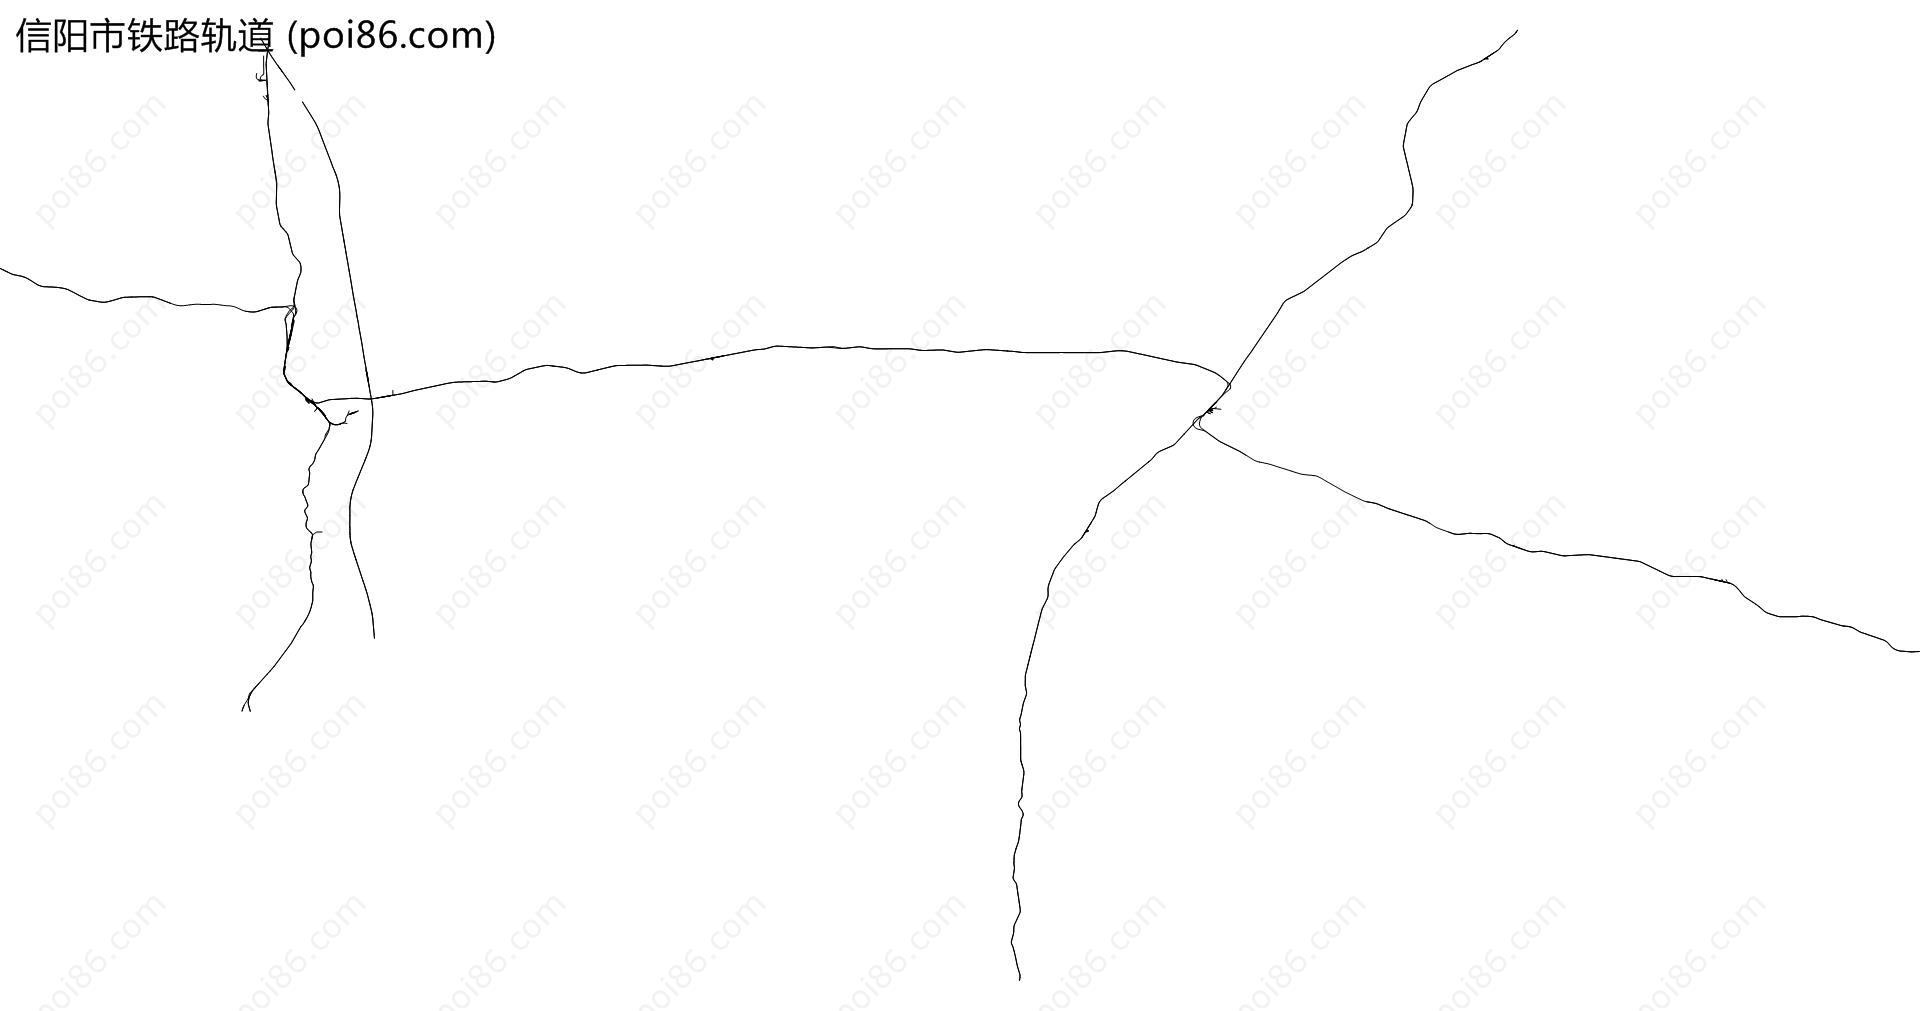 信阳市铁路轨道地图